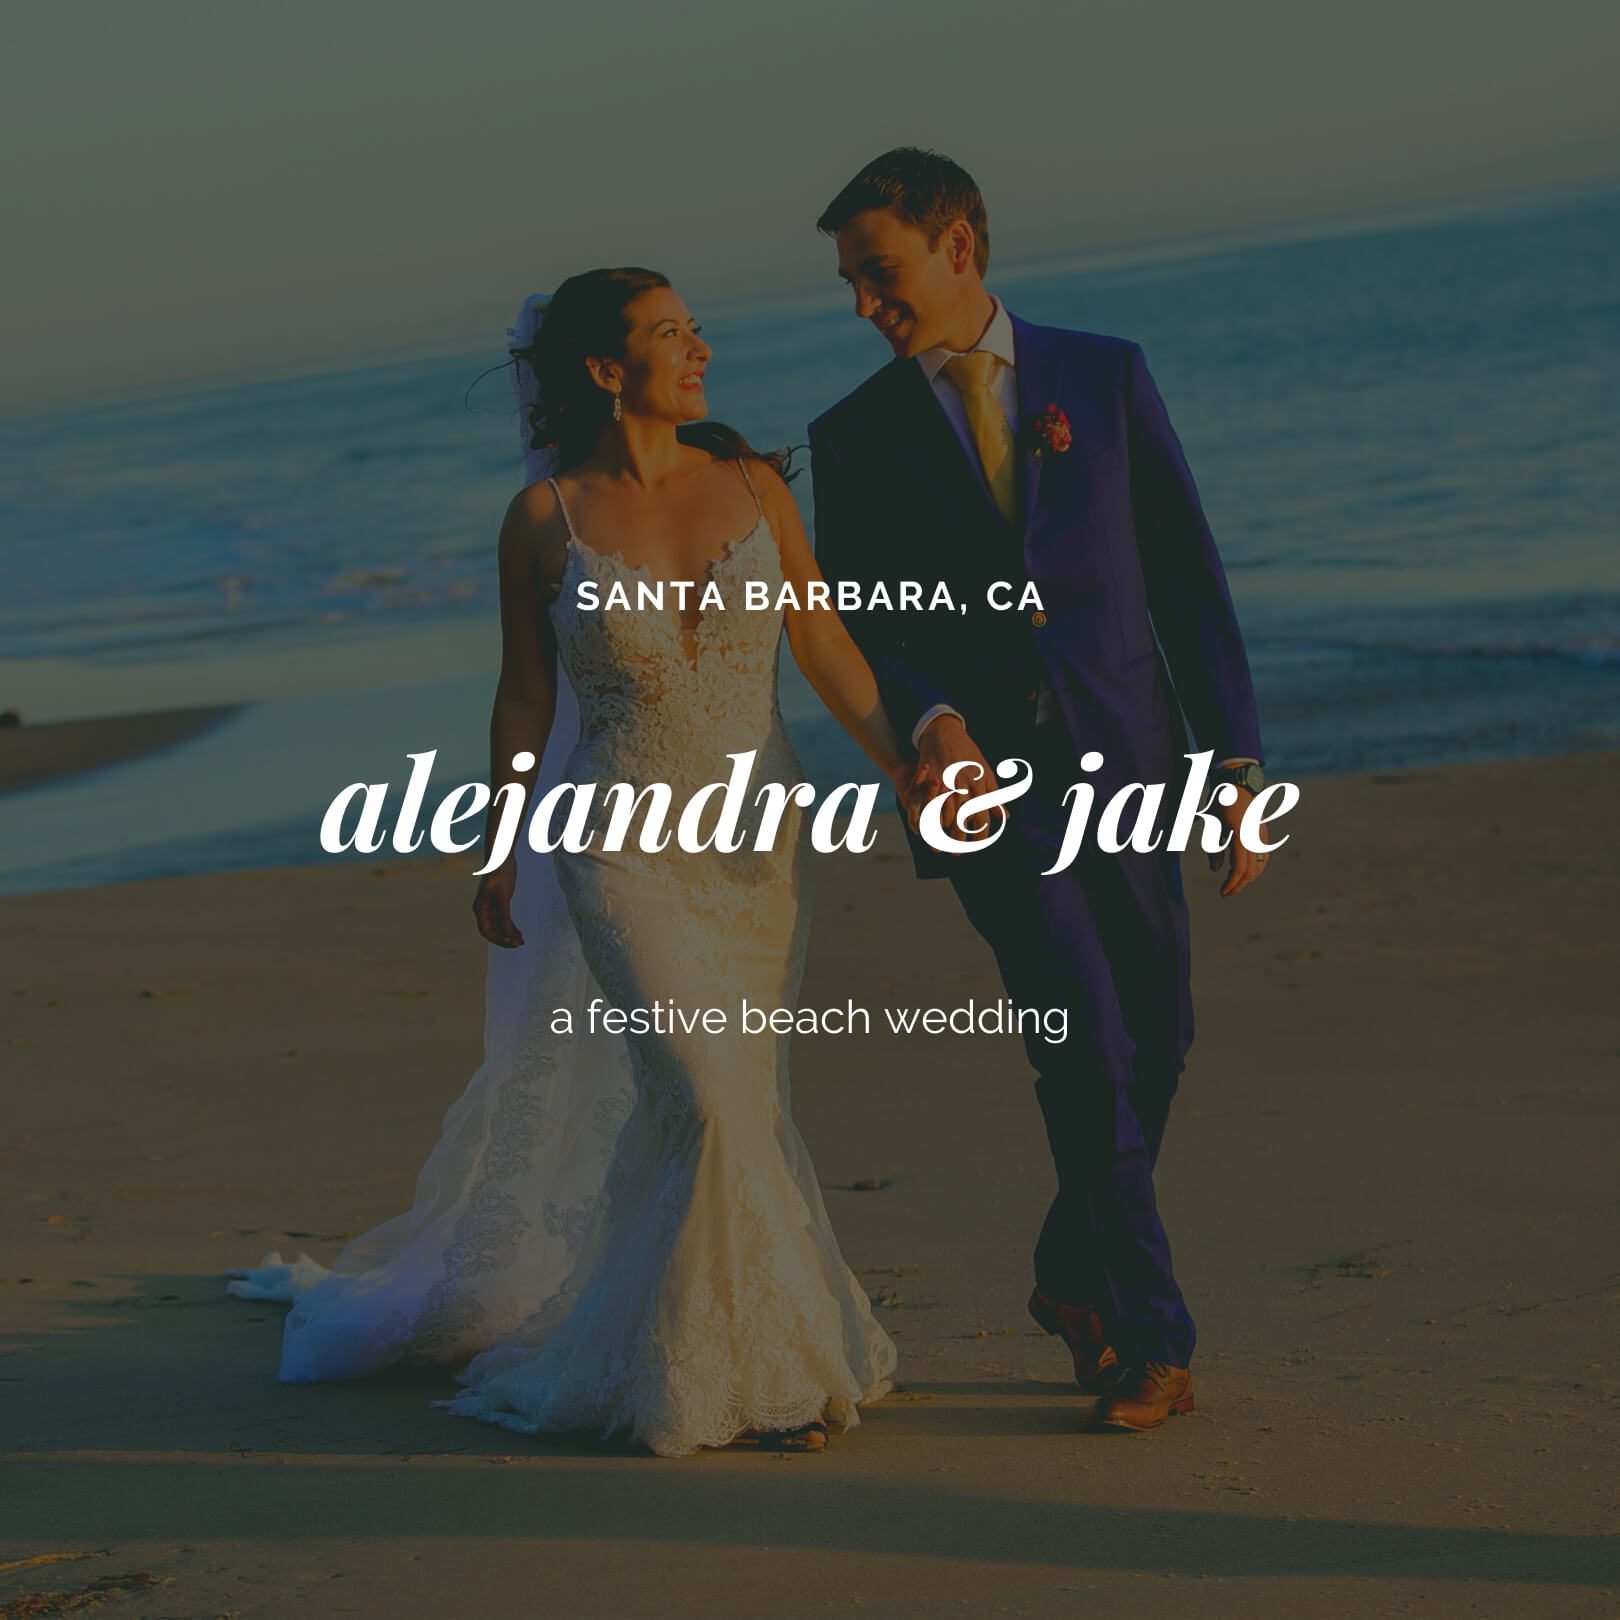 bay area wedding photographer - San Francisco beach wedding